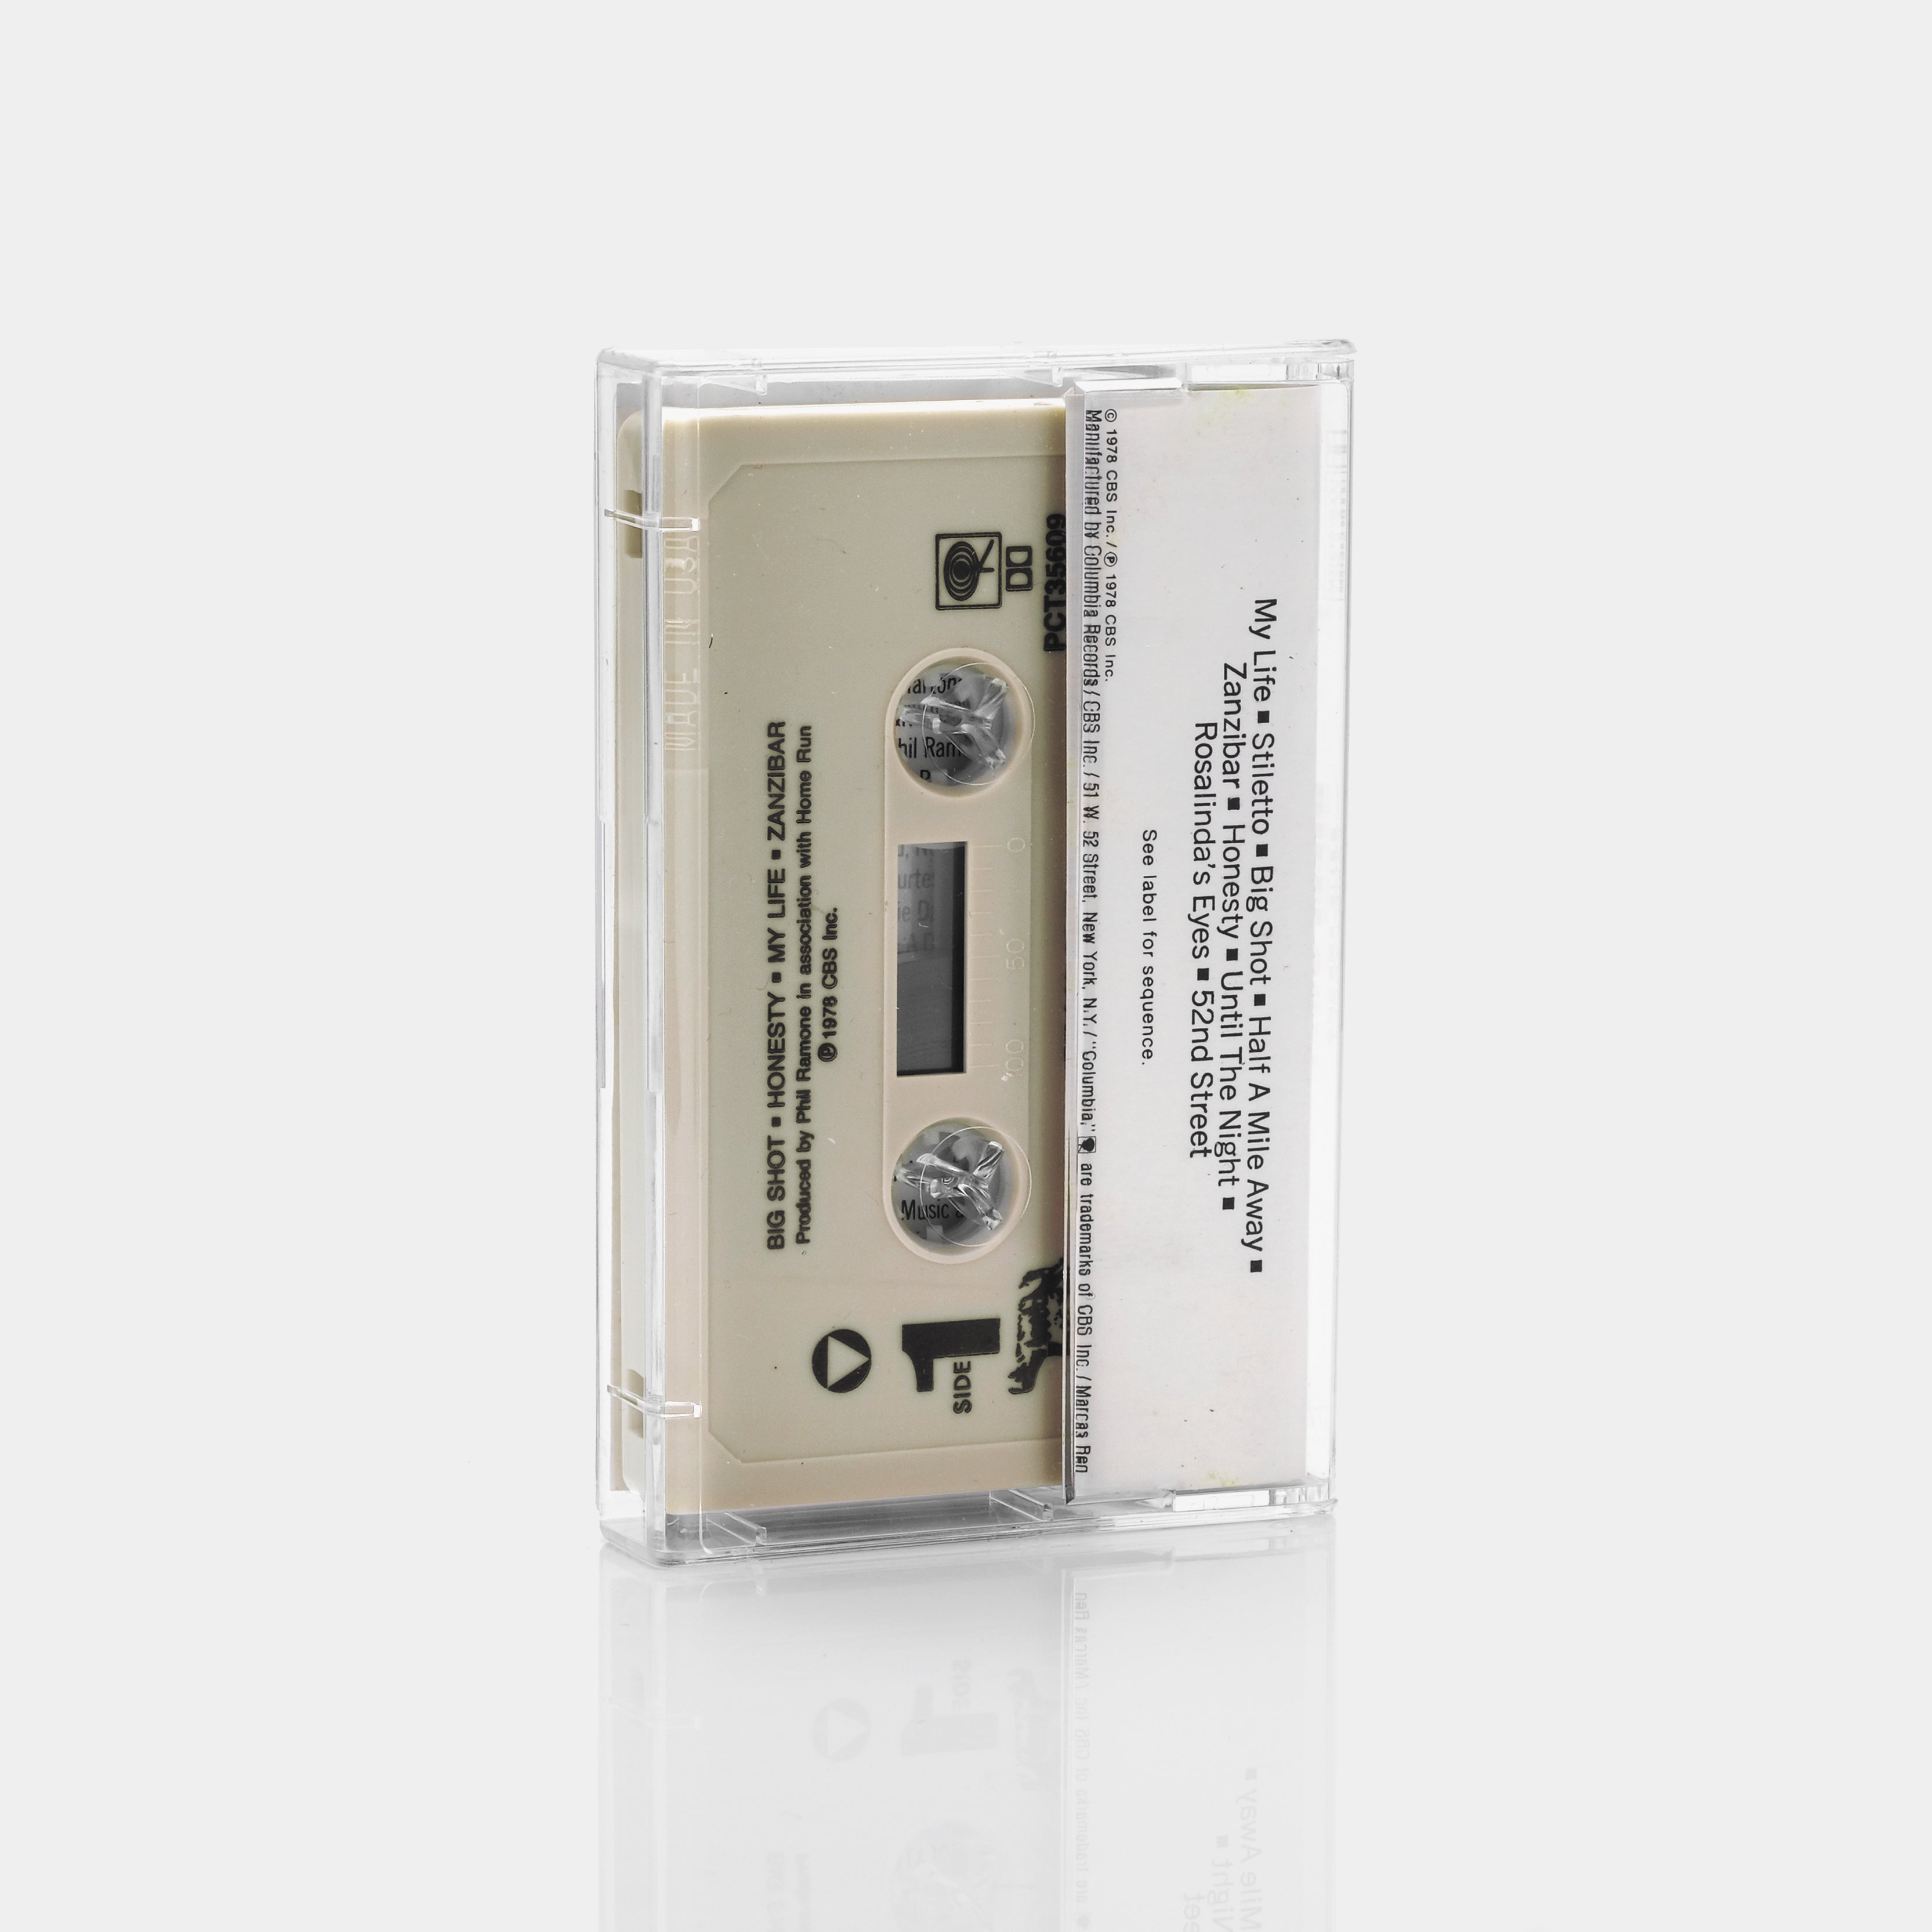 Billy Joel - 52nd Street Cassette Tape